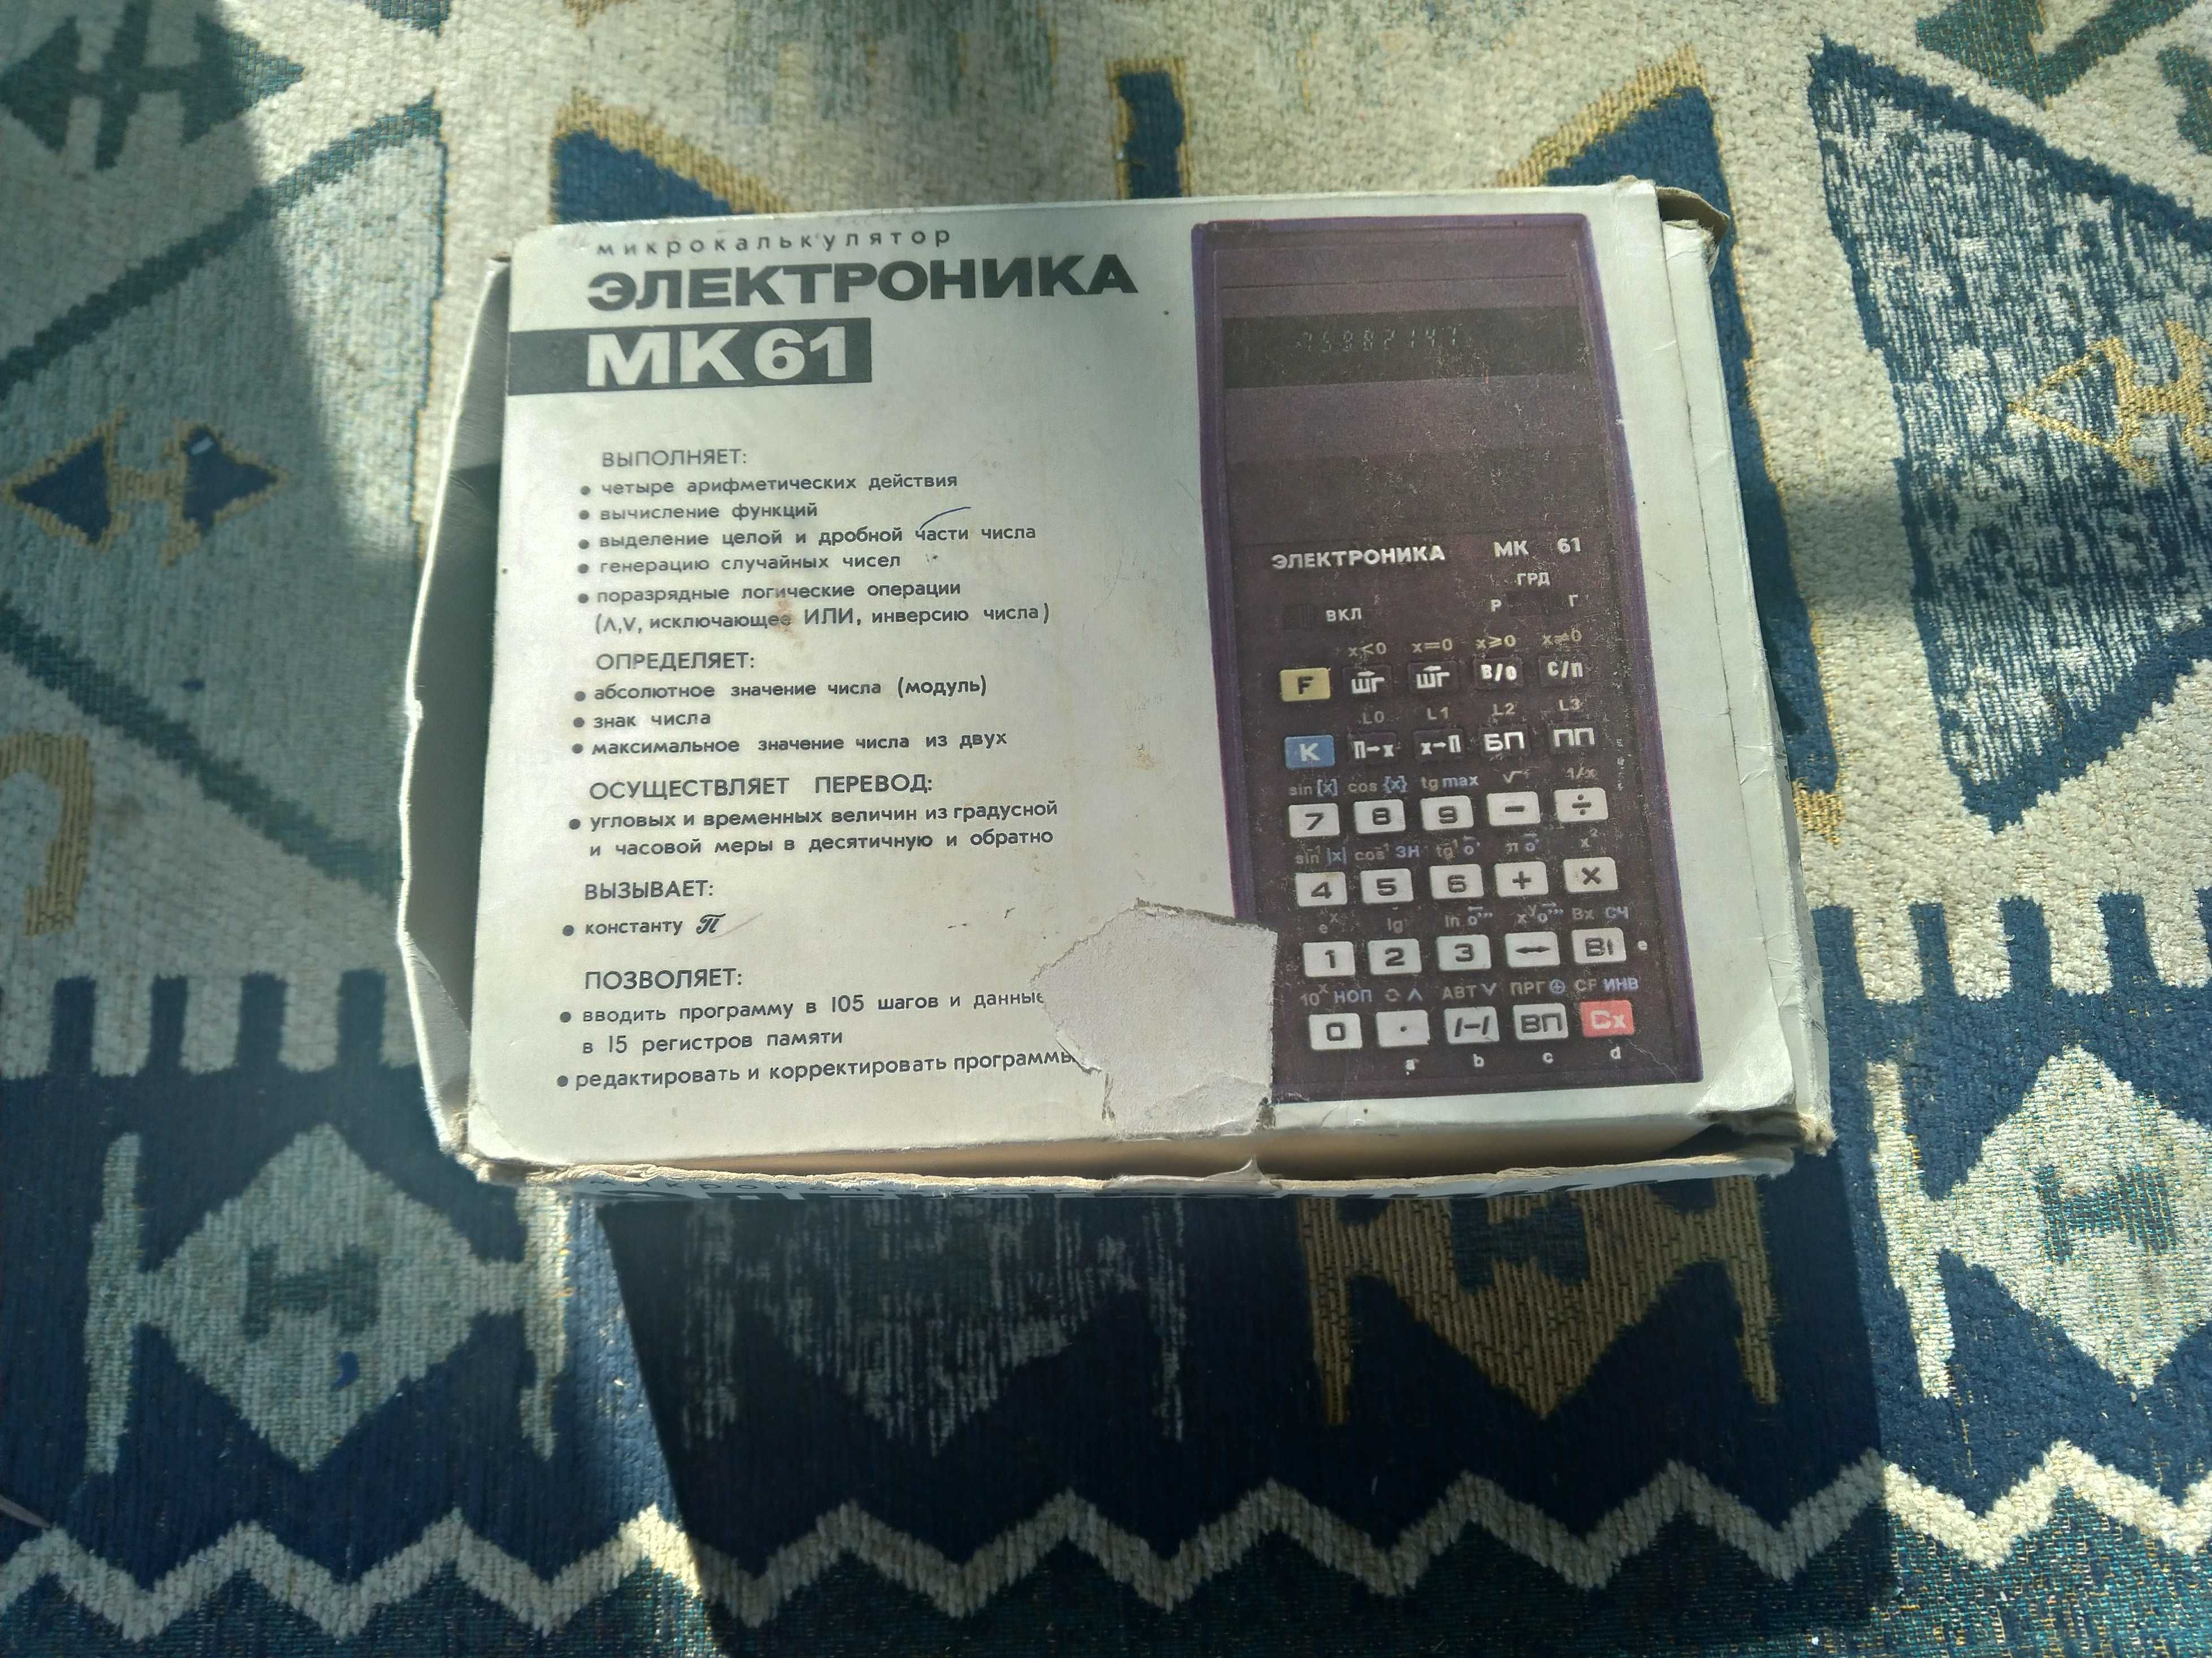 Електроника МК 61